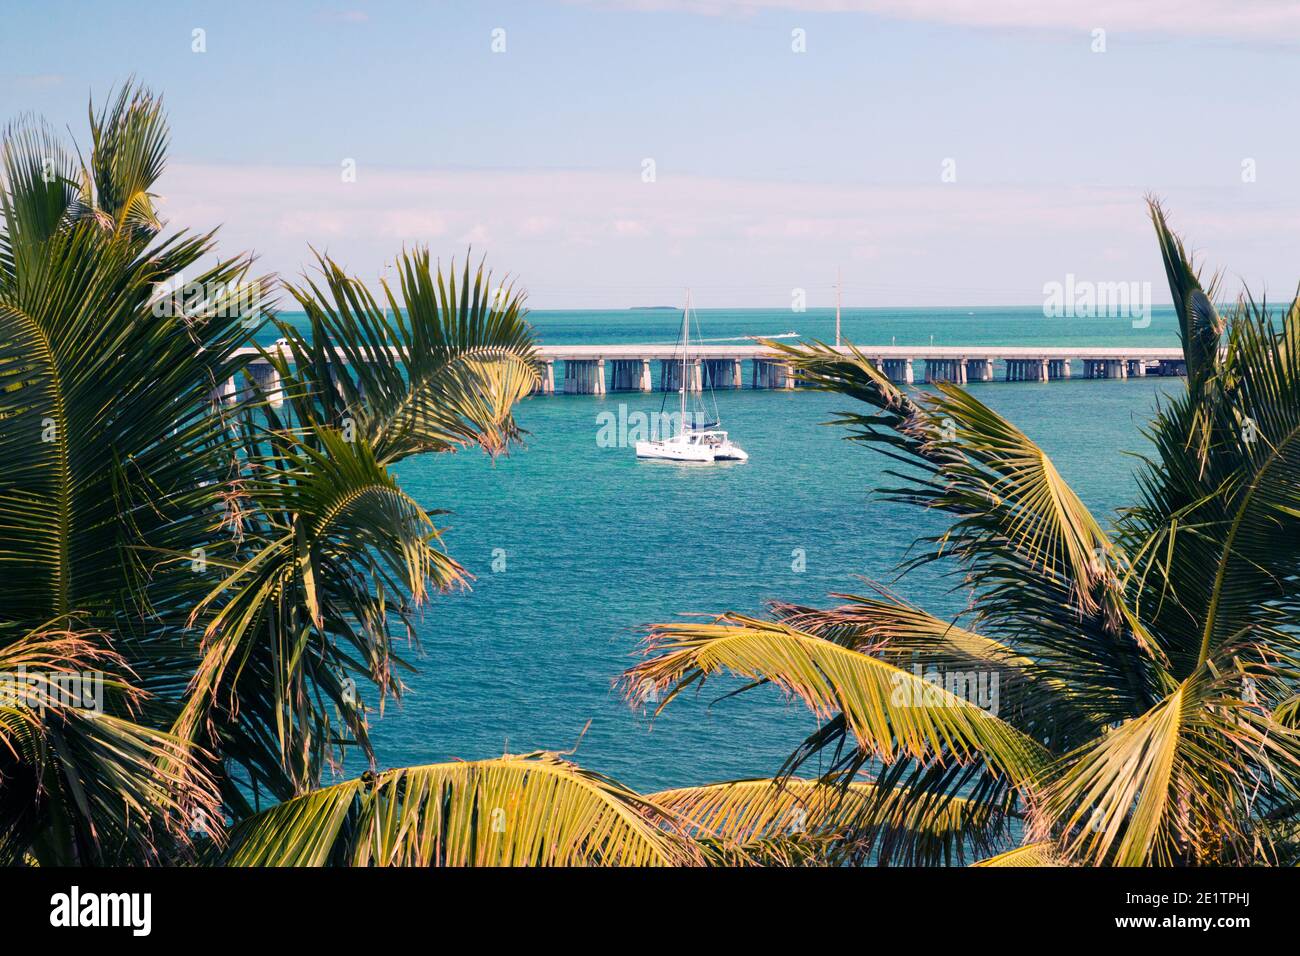 Vue à travers les palmiers tropicaux jusqu'au lagon bleu avec yacht de luxe amarré, pont de 12 miles sur fond, Bahia Honda Key Florida Banque D'Images